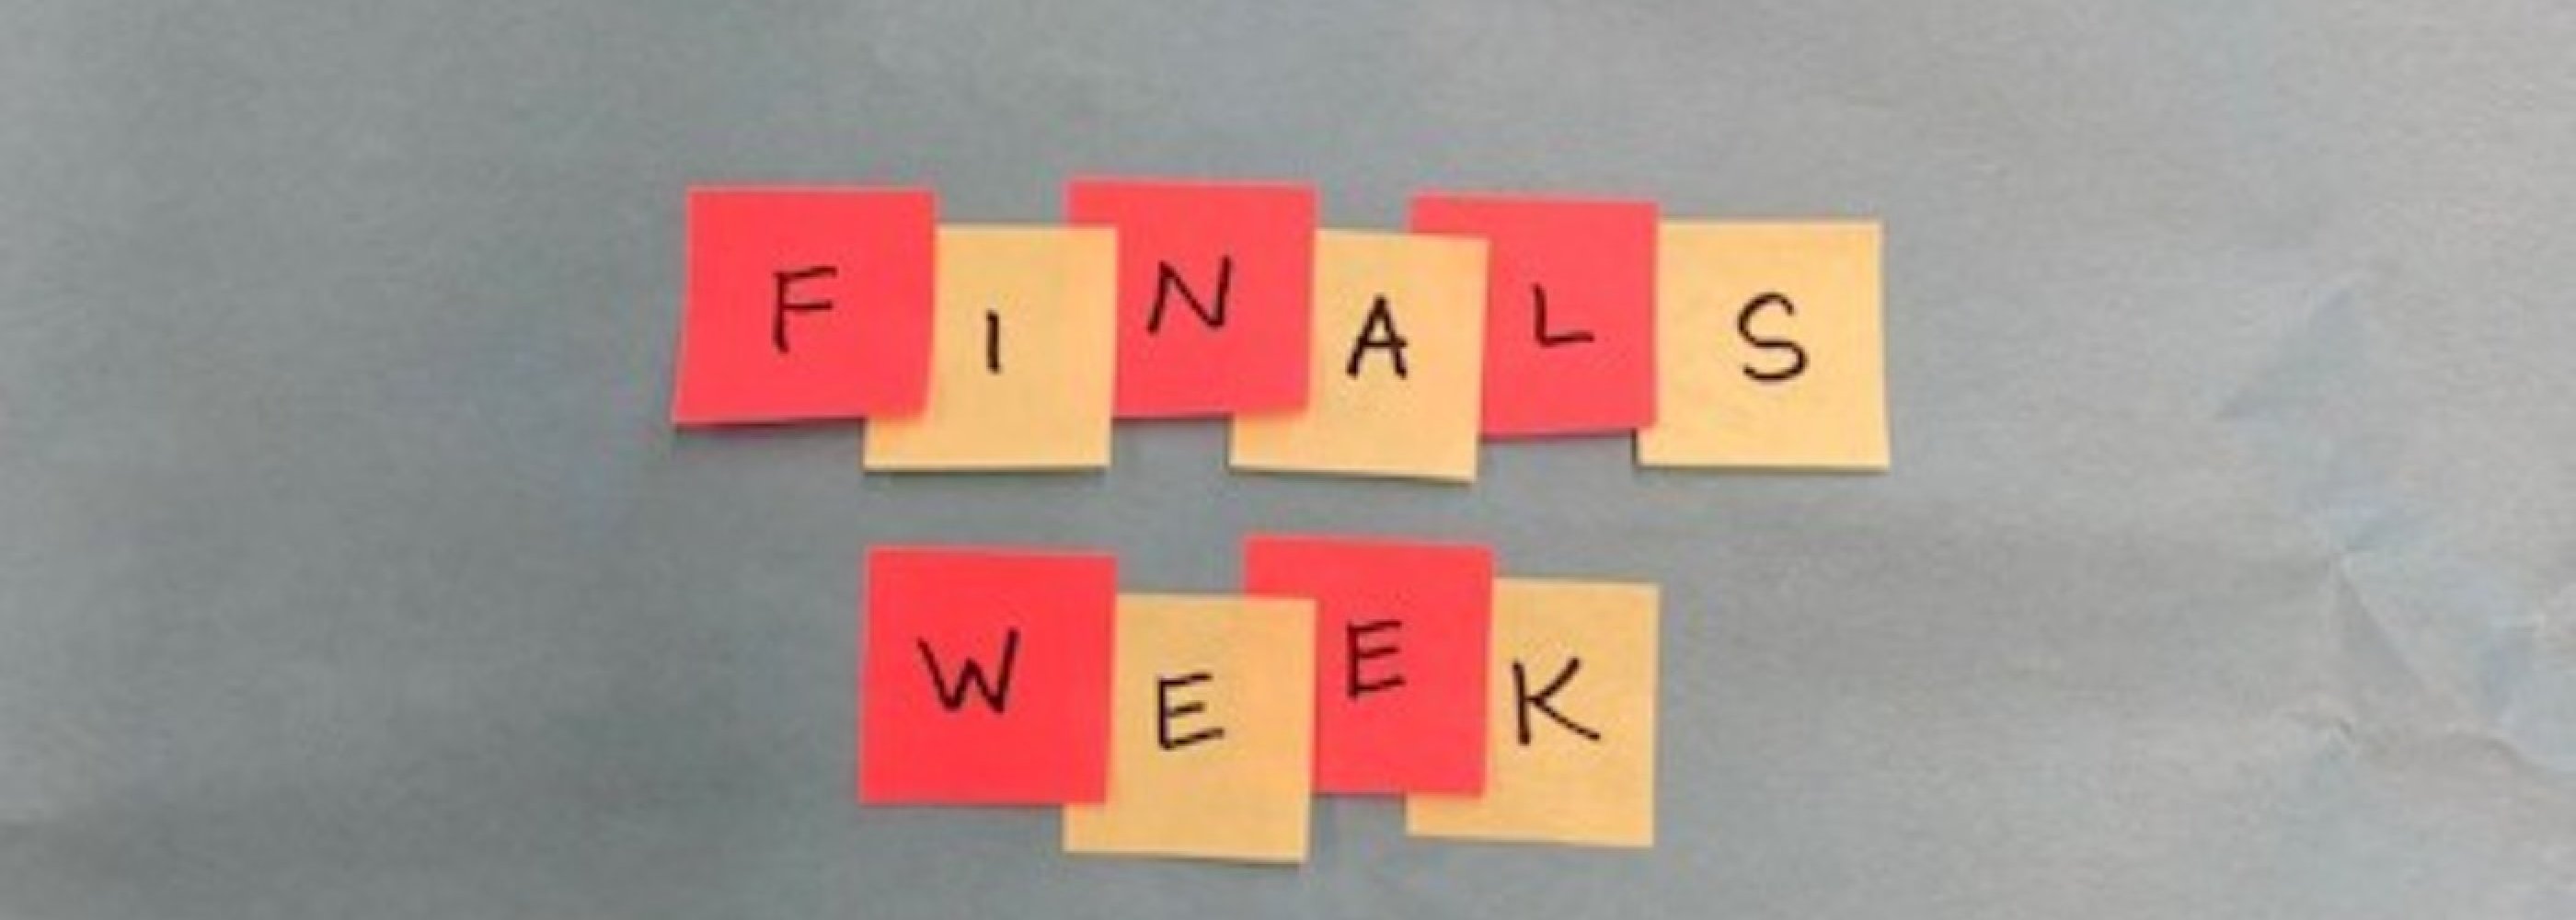 finals week schedule